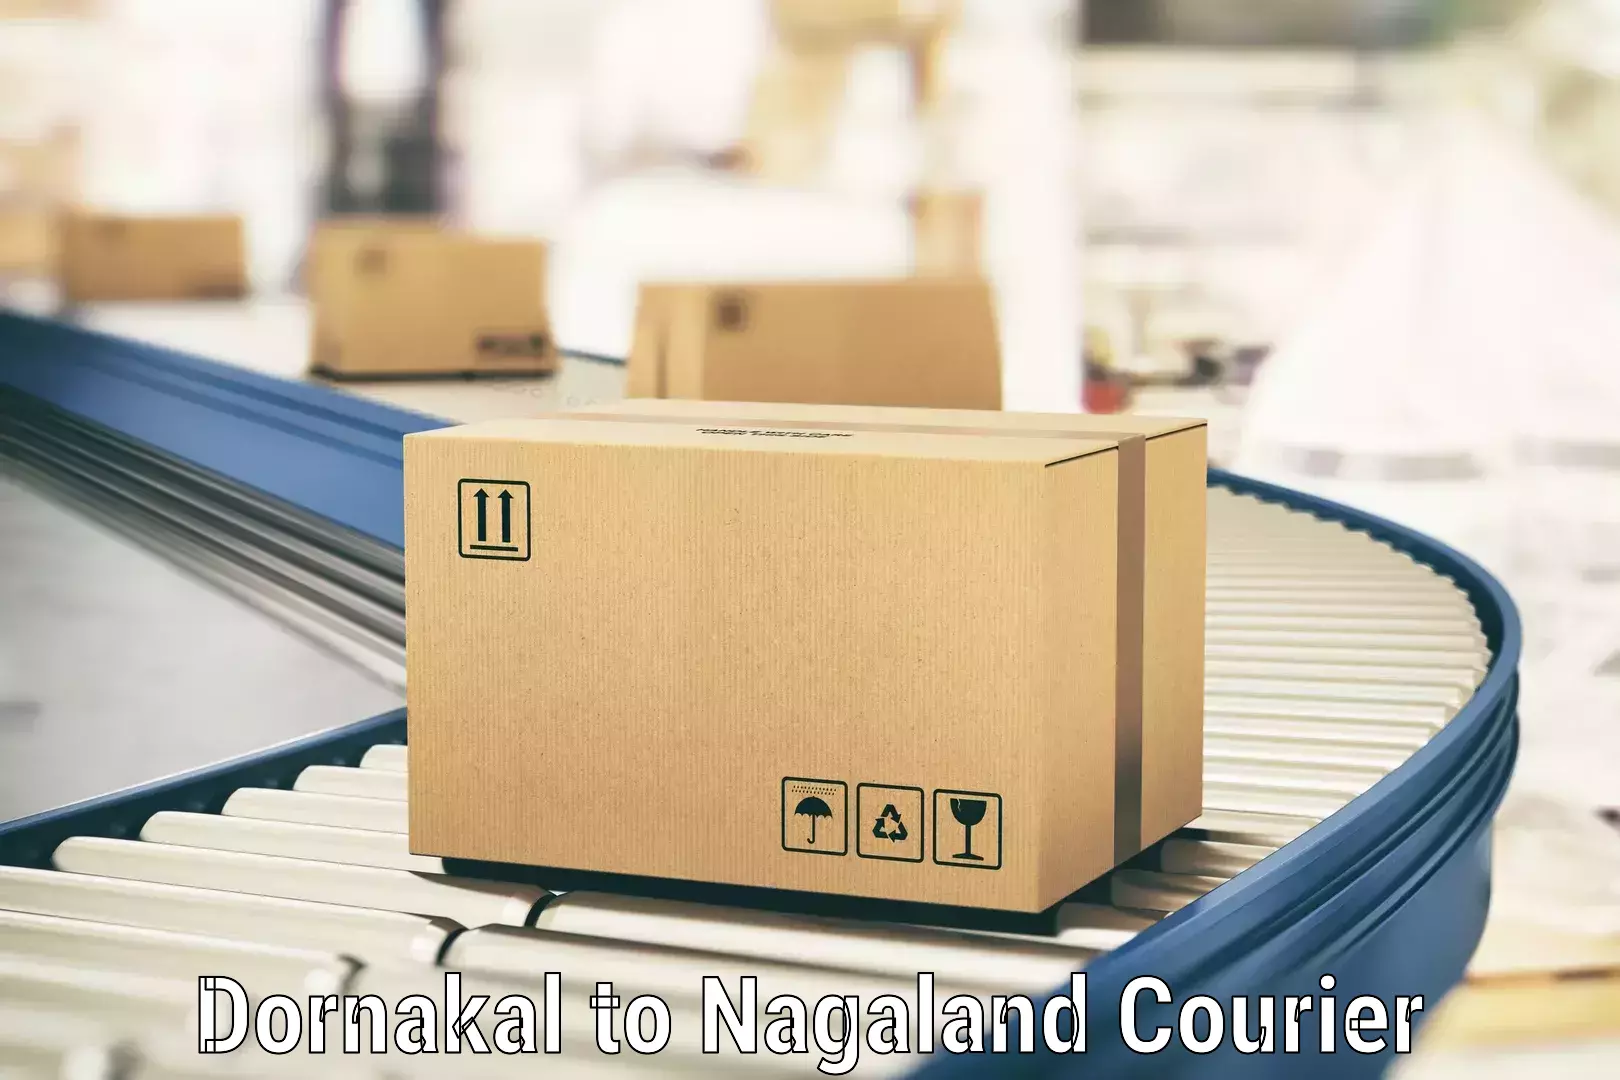 Modern delivery methods Dornakal to NIT Nagaland